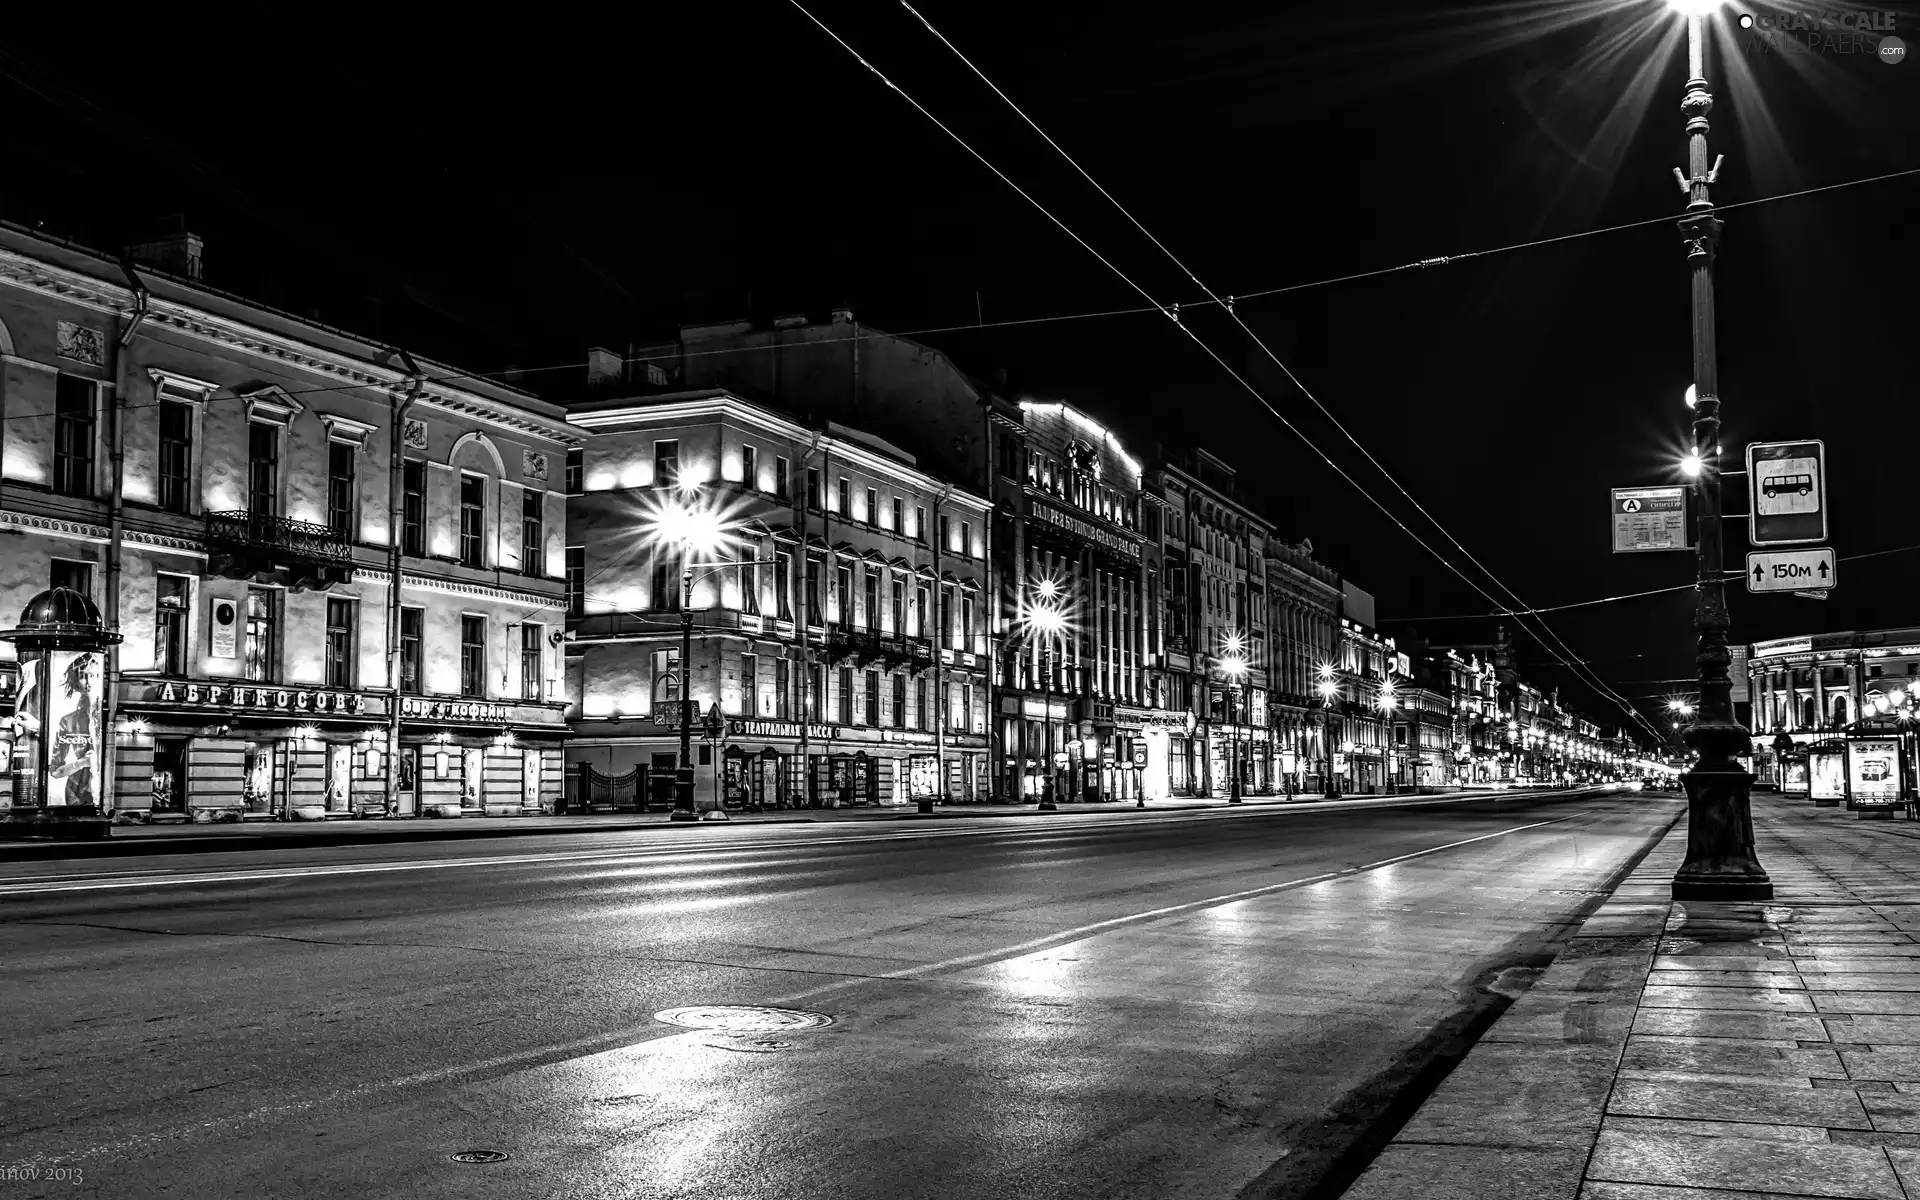 St. Petersburg, Russia, buildings, lanterns, Street